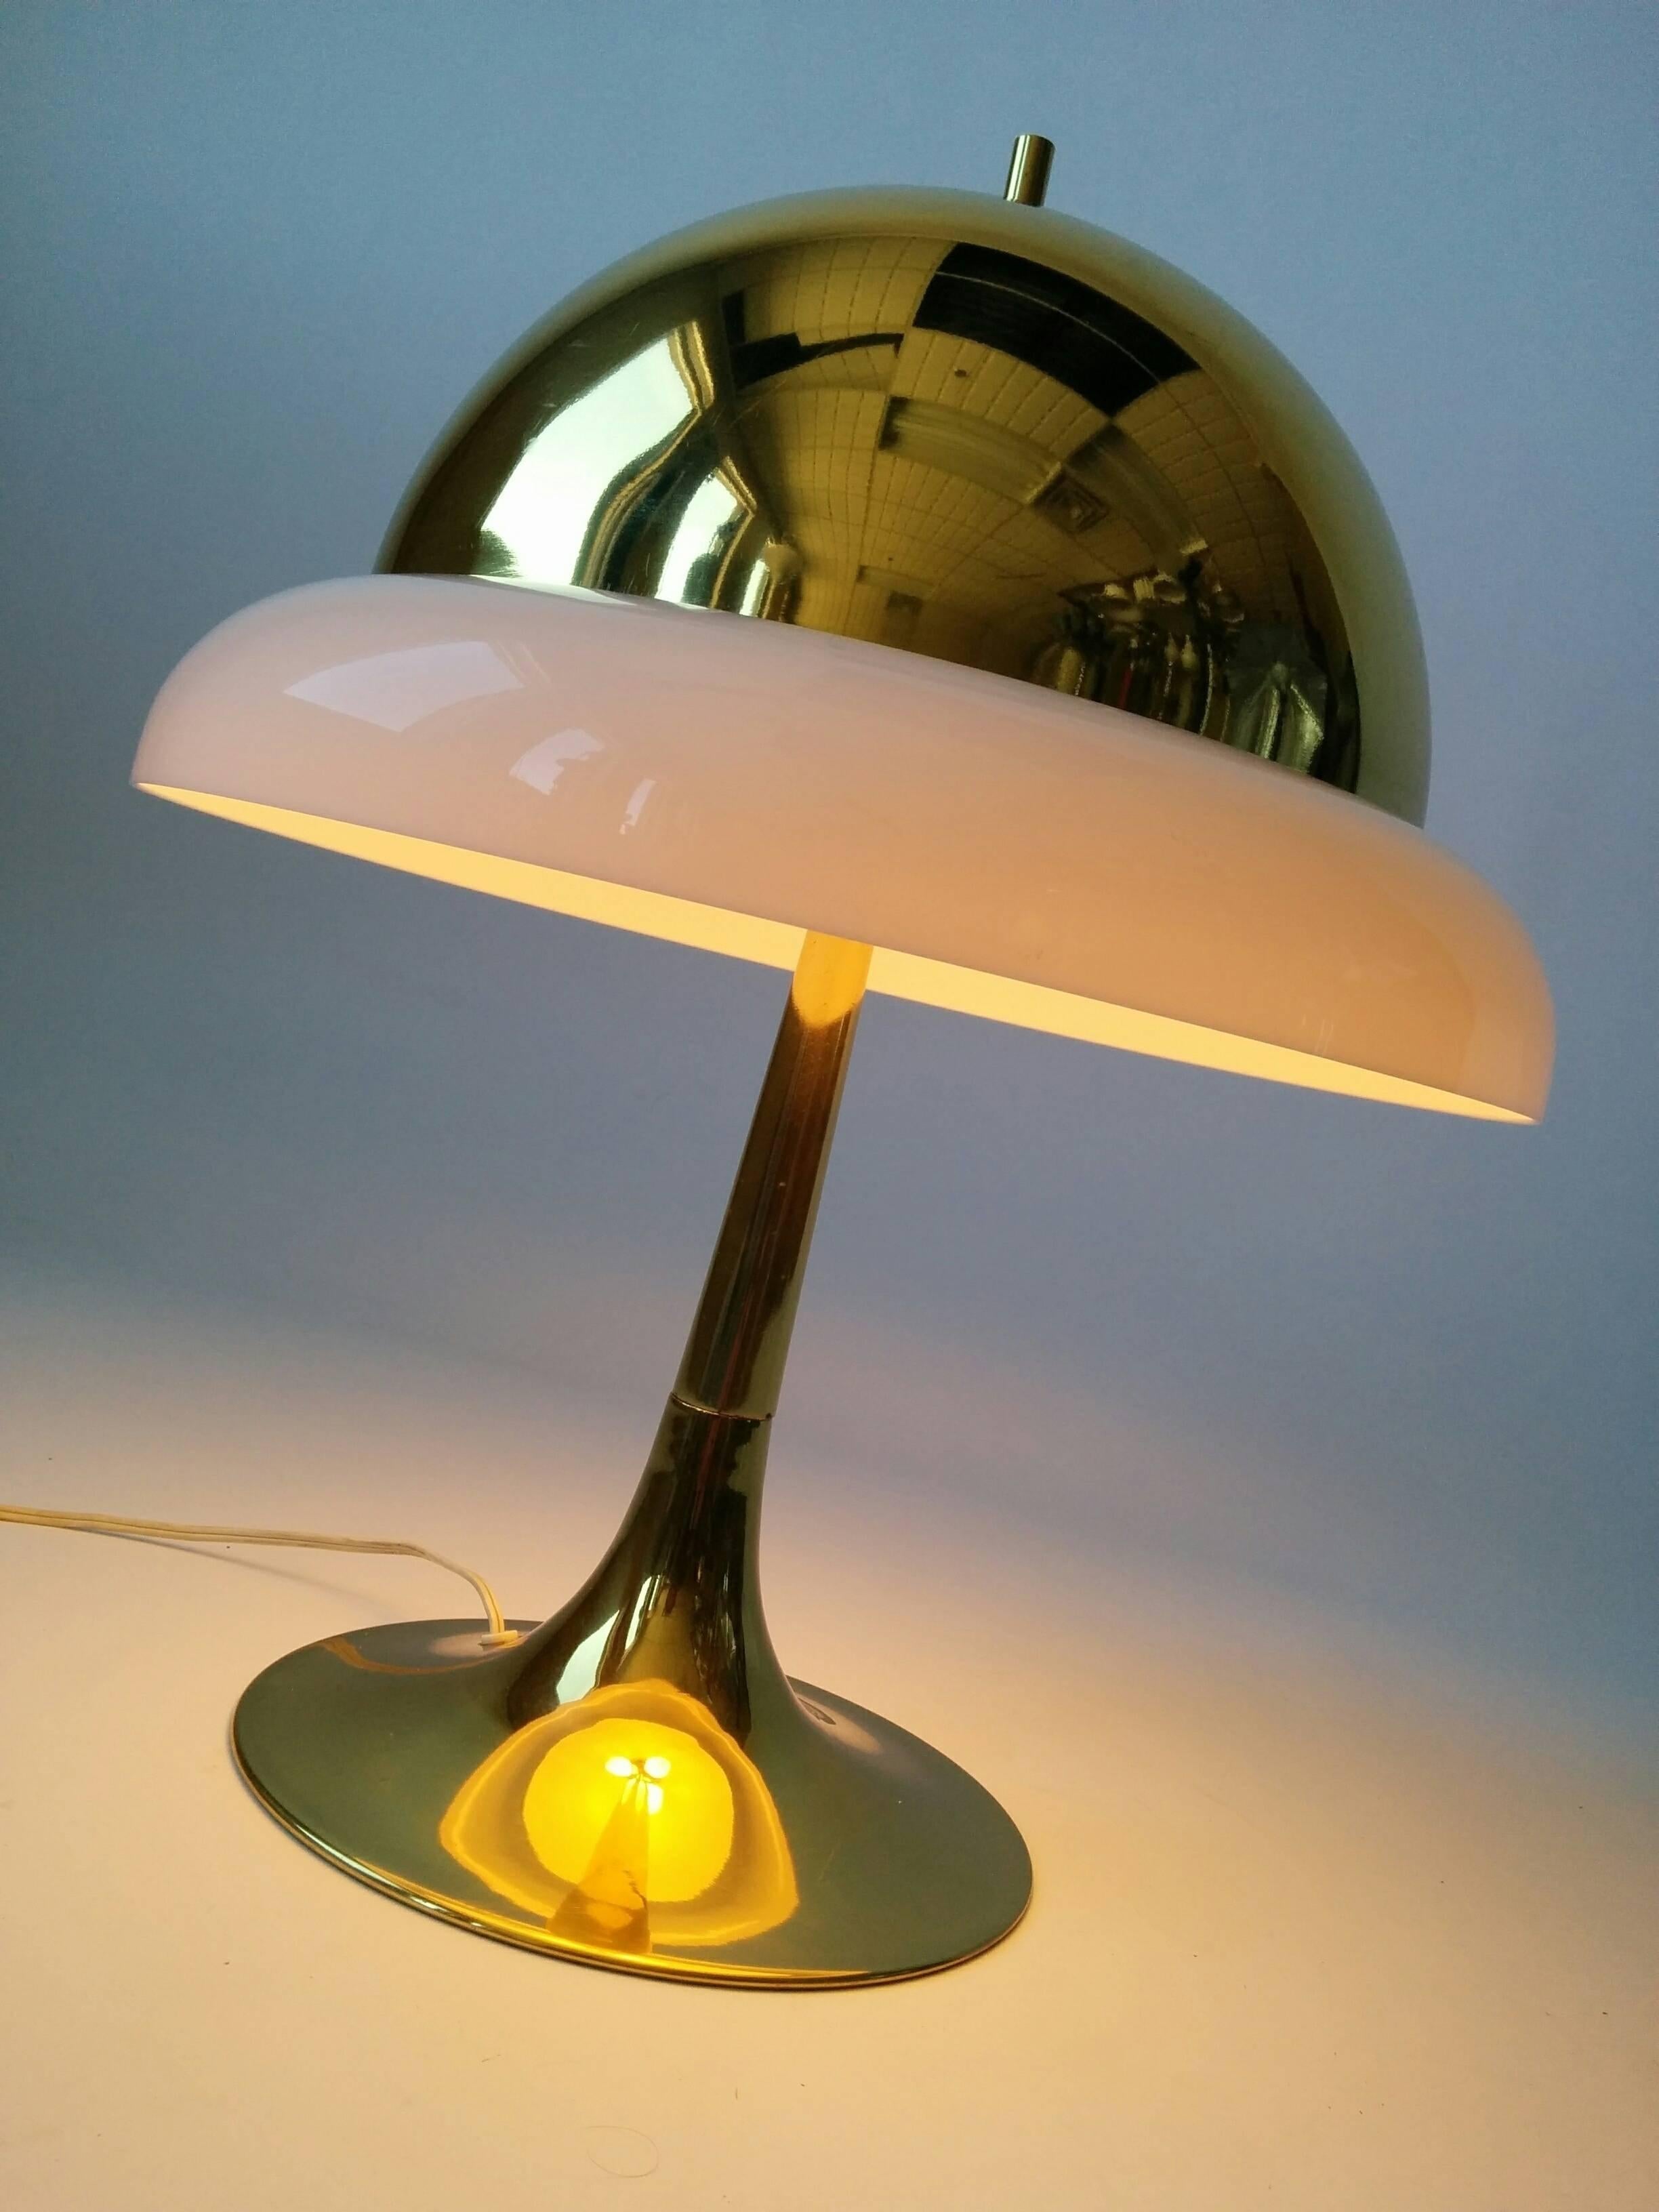 Lampe de table confortable en laiton avec un anneau extérieur en plexiglas reposant sur le bord de l'abat-jour, ce qui lui confère une sensation de chaleur et d'intimité.

Trois douilles de taille candélabre.